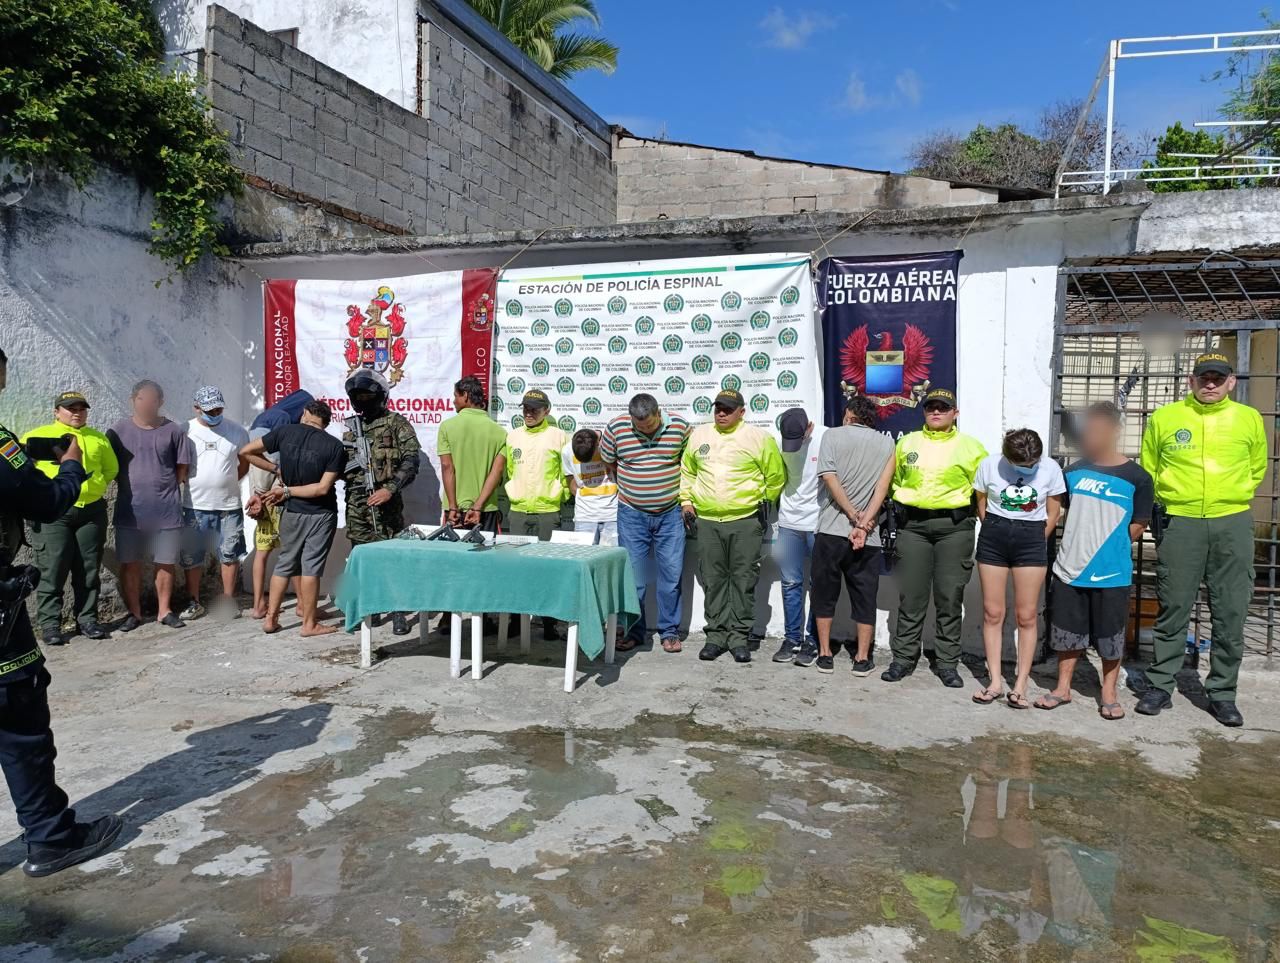 Capturados once presuntos responsables de tráfico de estupefacientes en Espinal, Tolima